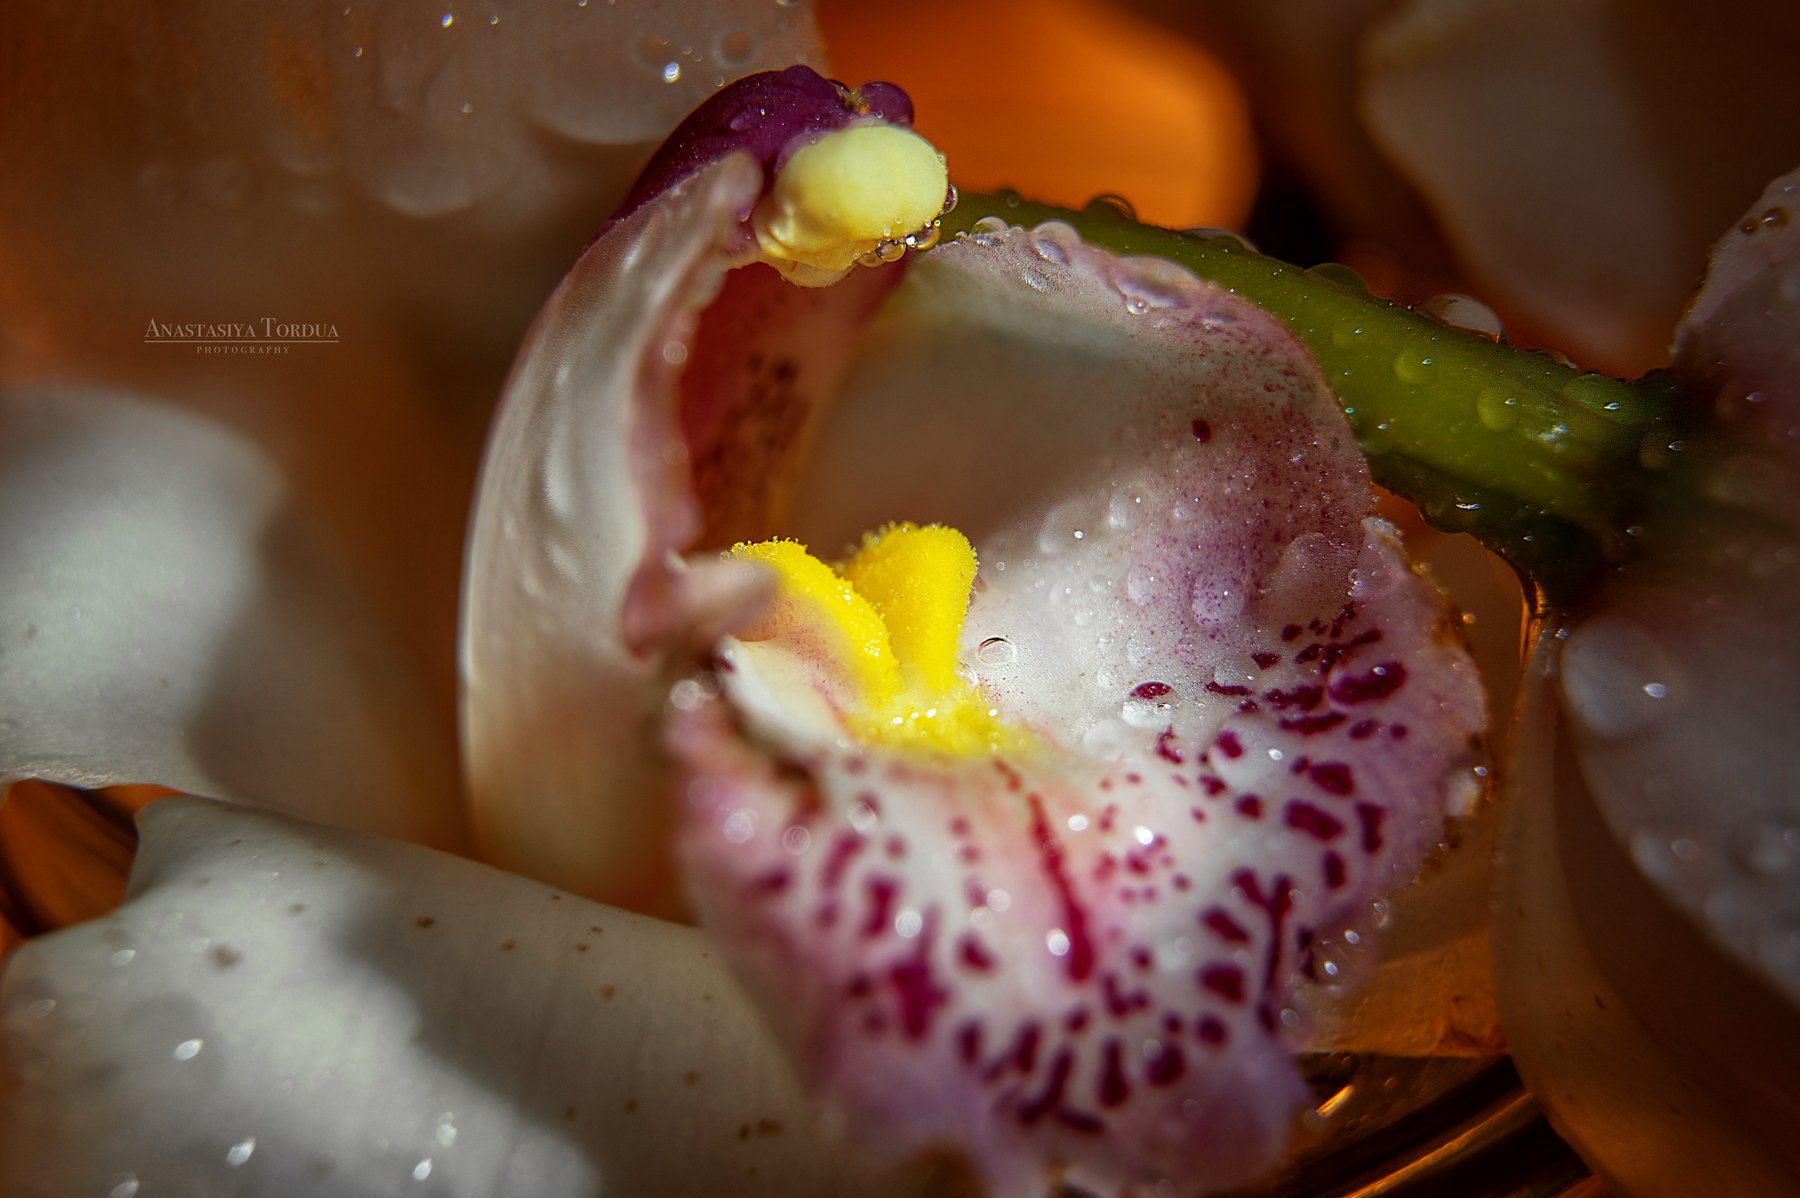 орхидея макро тордуа макрофото  цветок крупныйплан цветы, Анастасия Тордуа